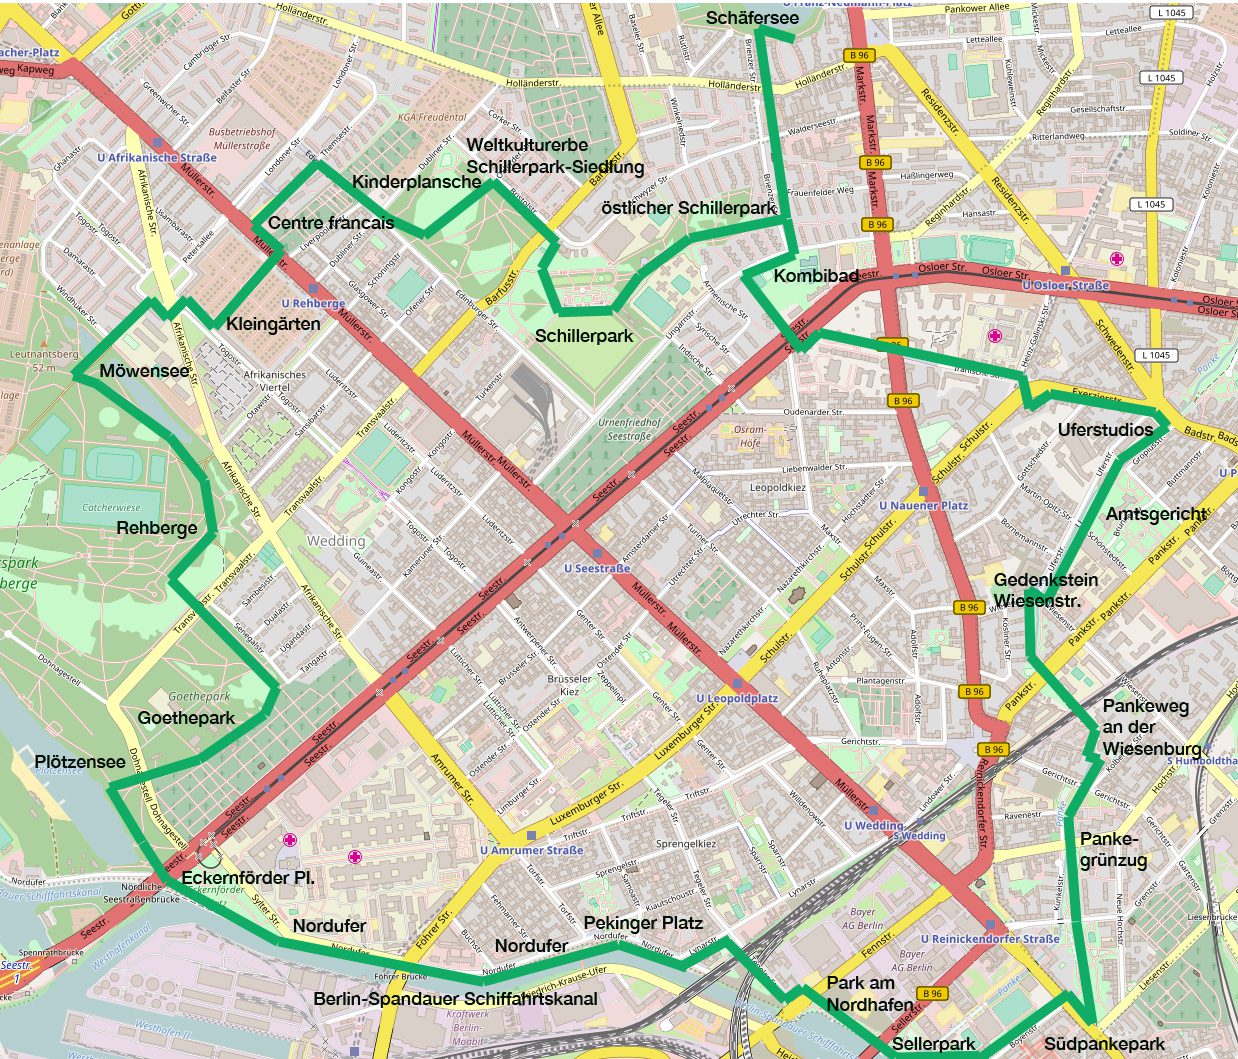 Kartenbasis: Openstreetmap